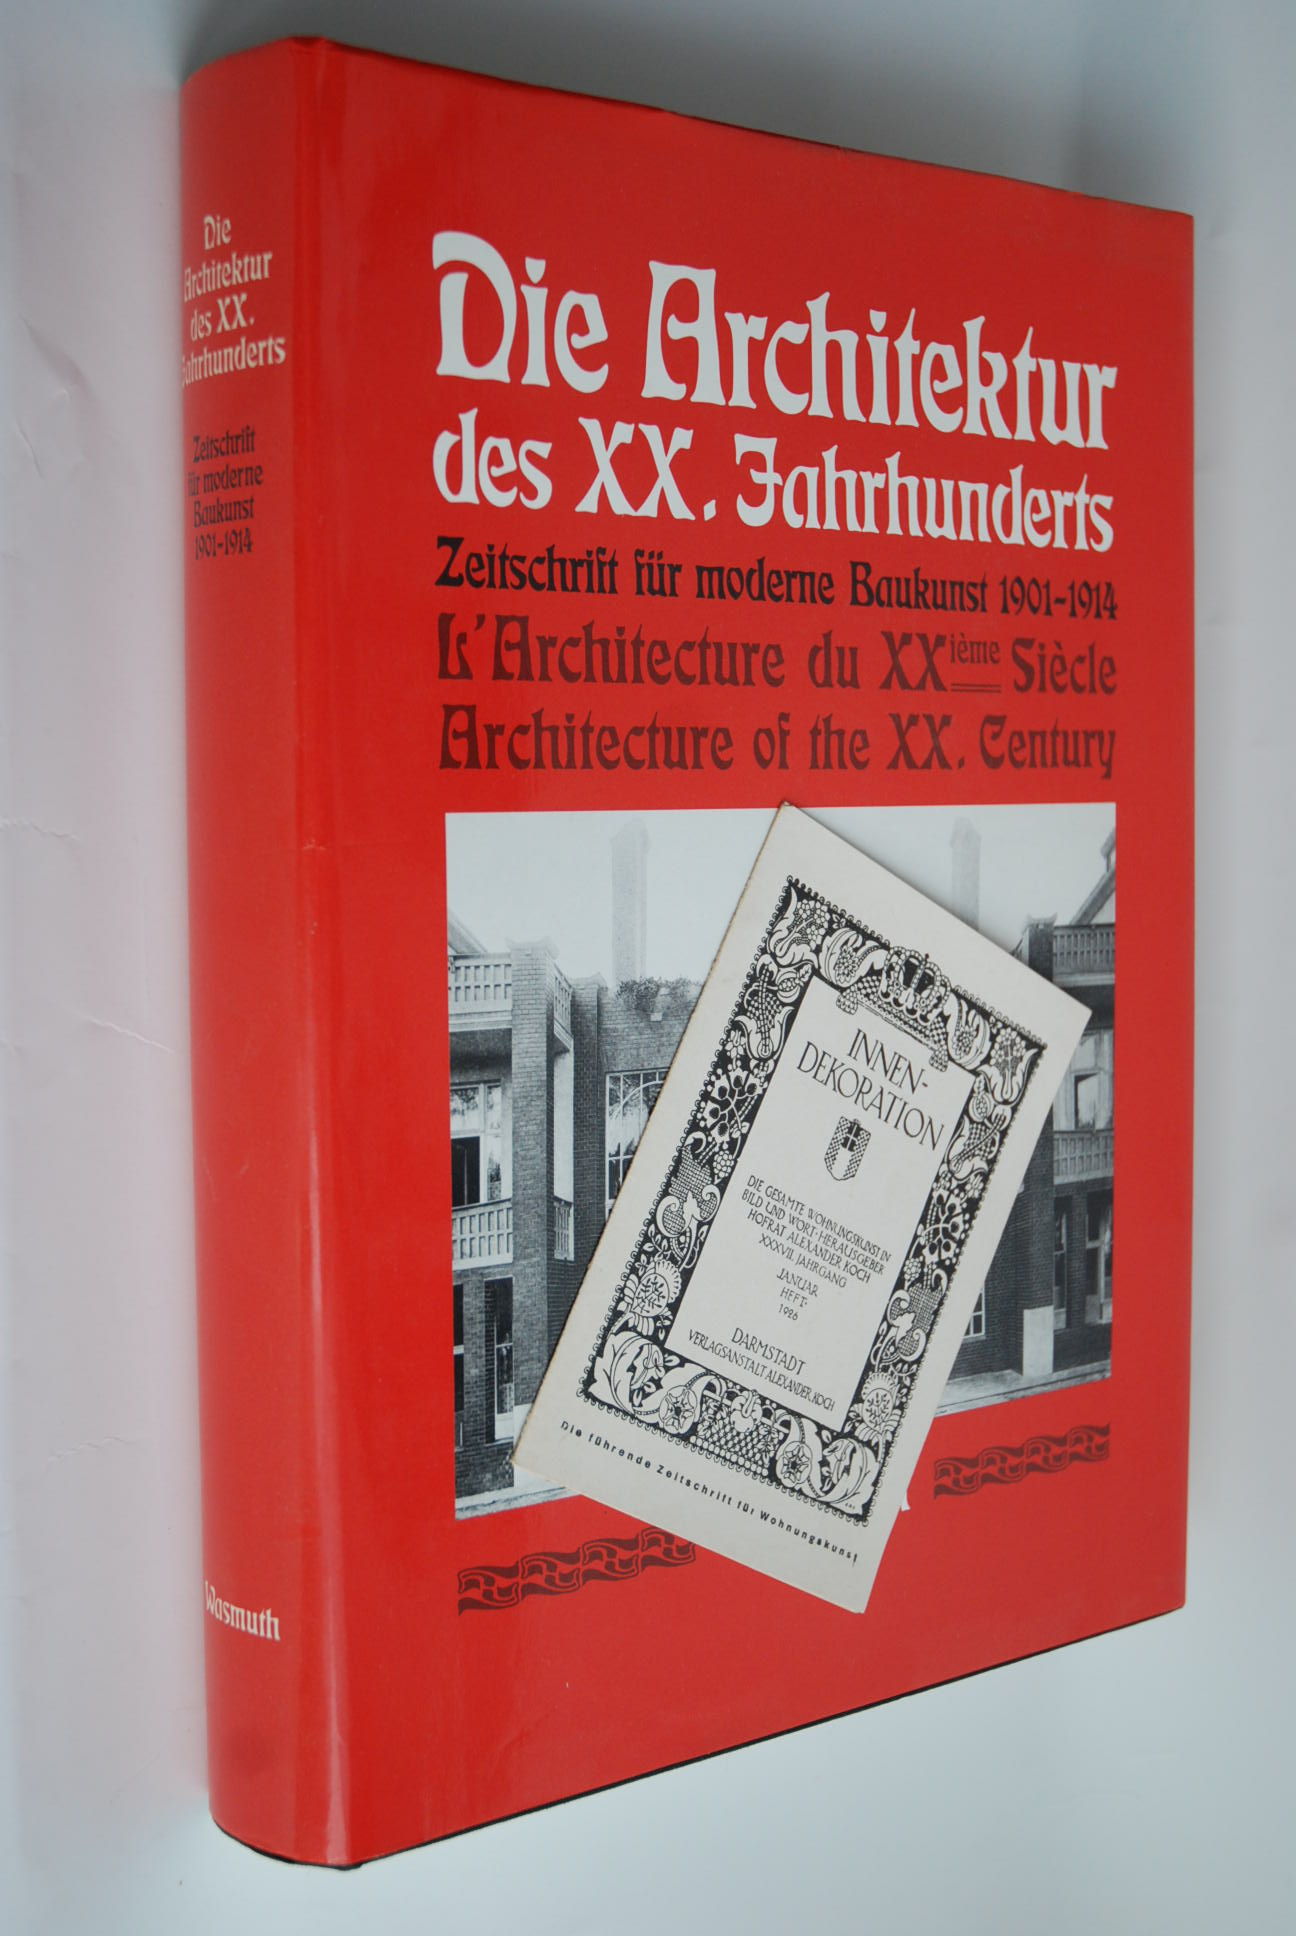 Architektur des 20. Jahrhunderts. Zeitschrift für moderne Baukunst 1901 - 1914